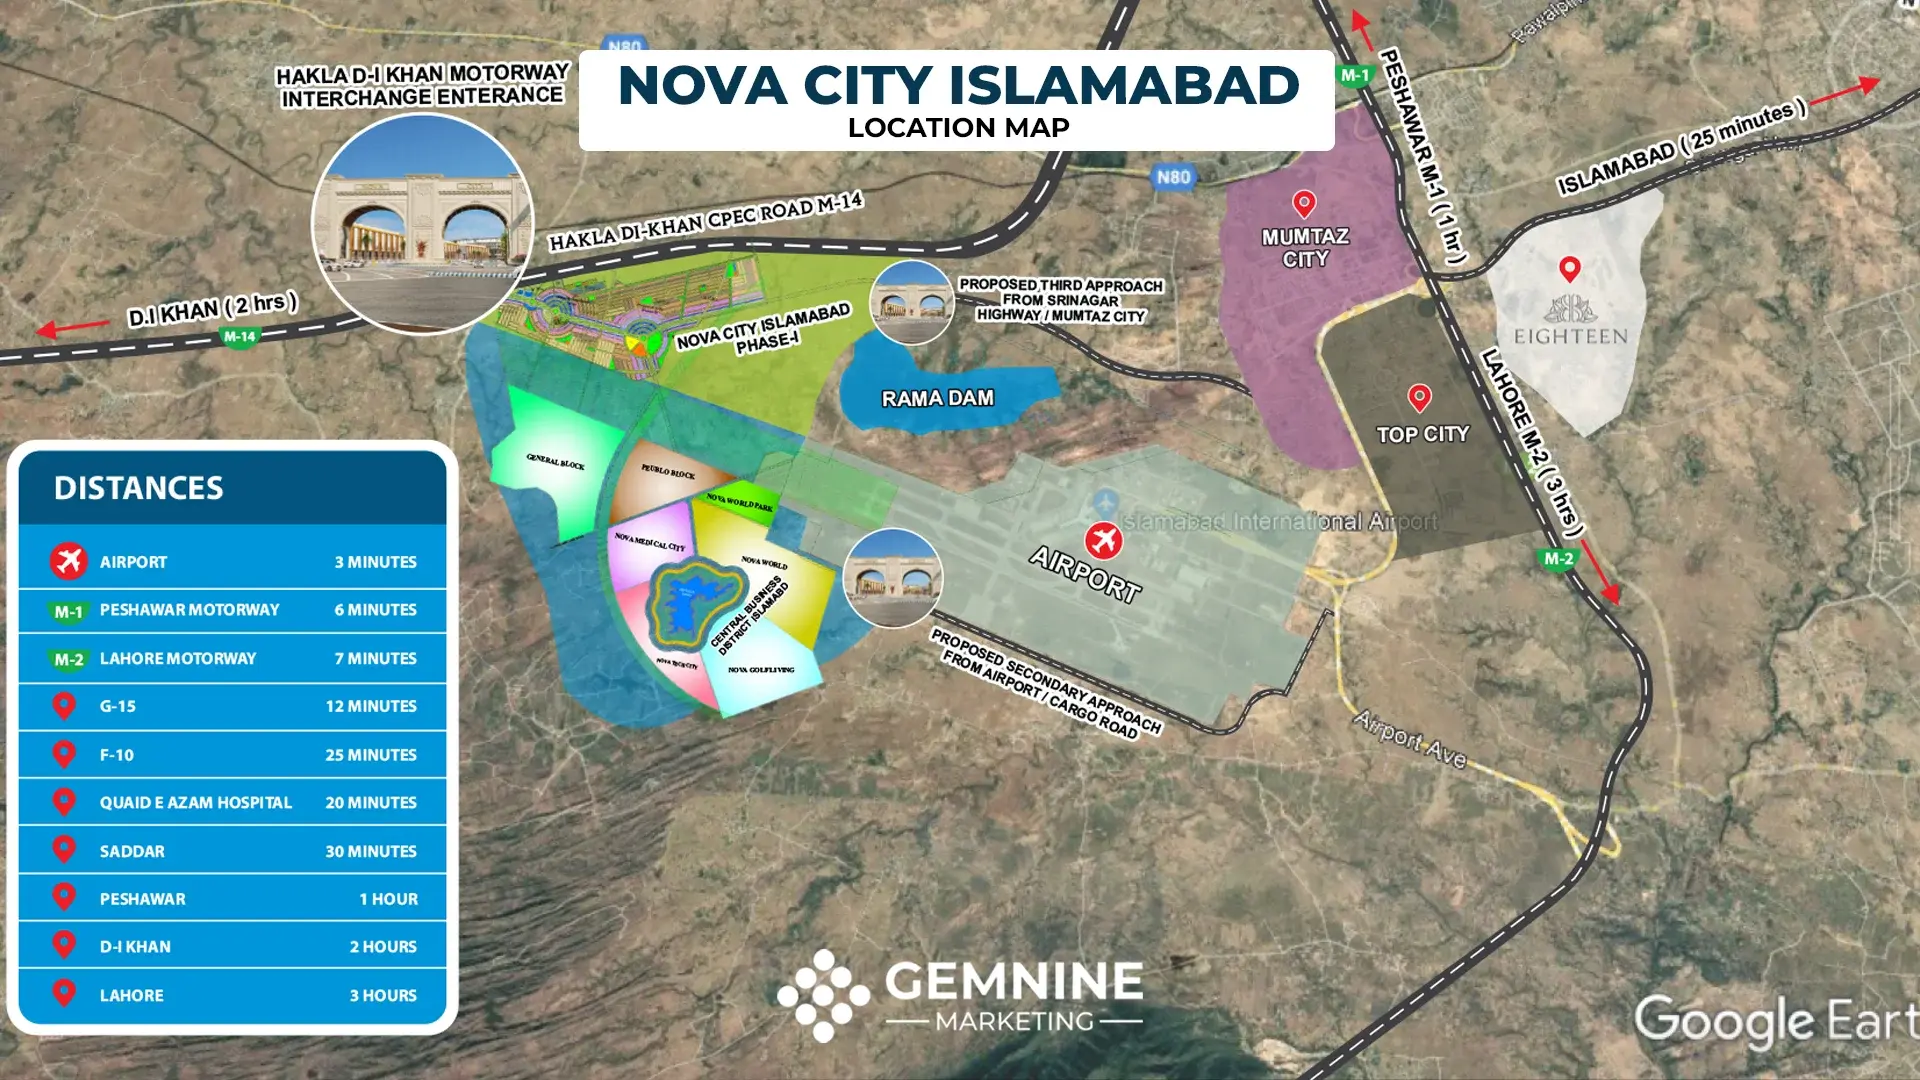 Nova City Islamabad Location Map